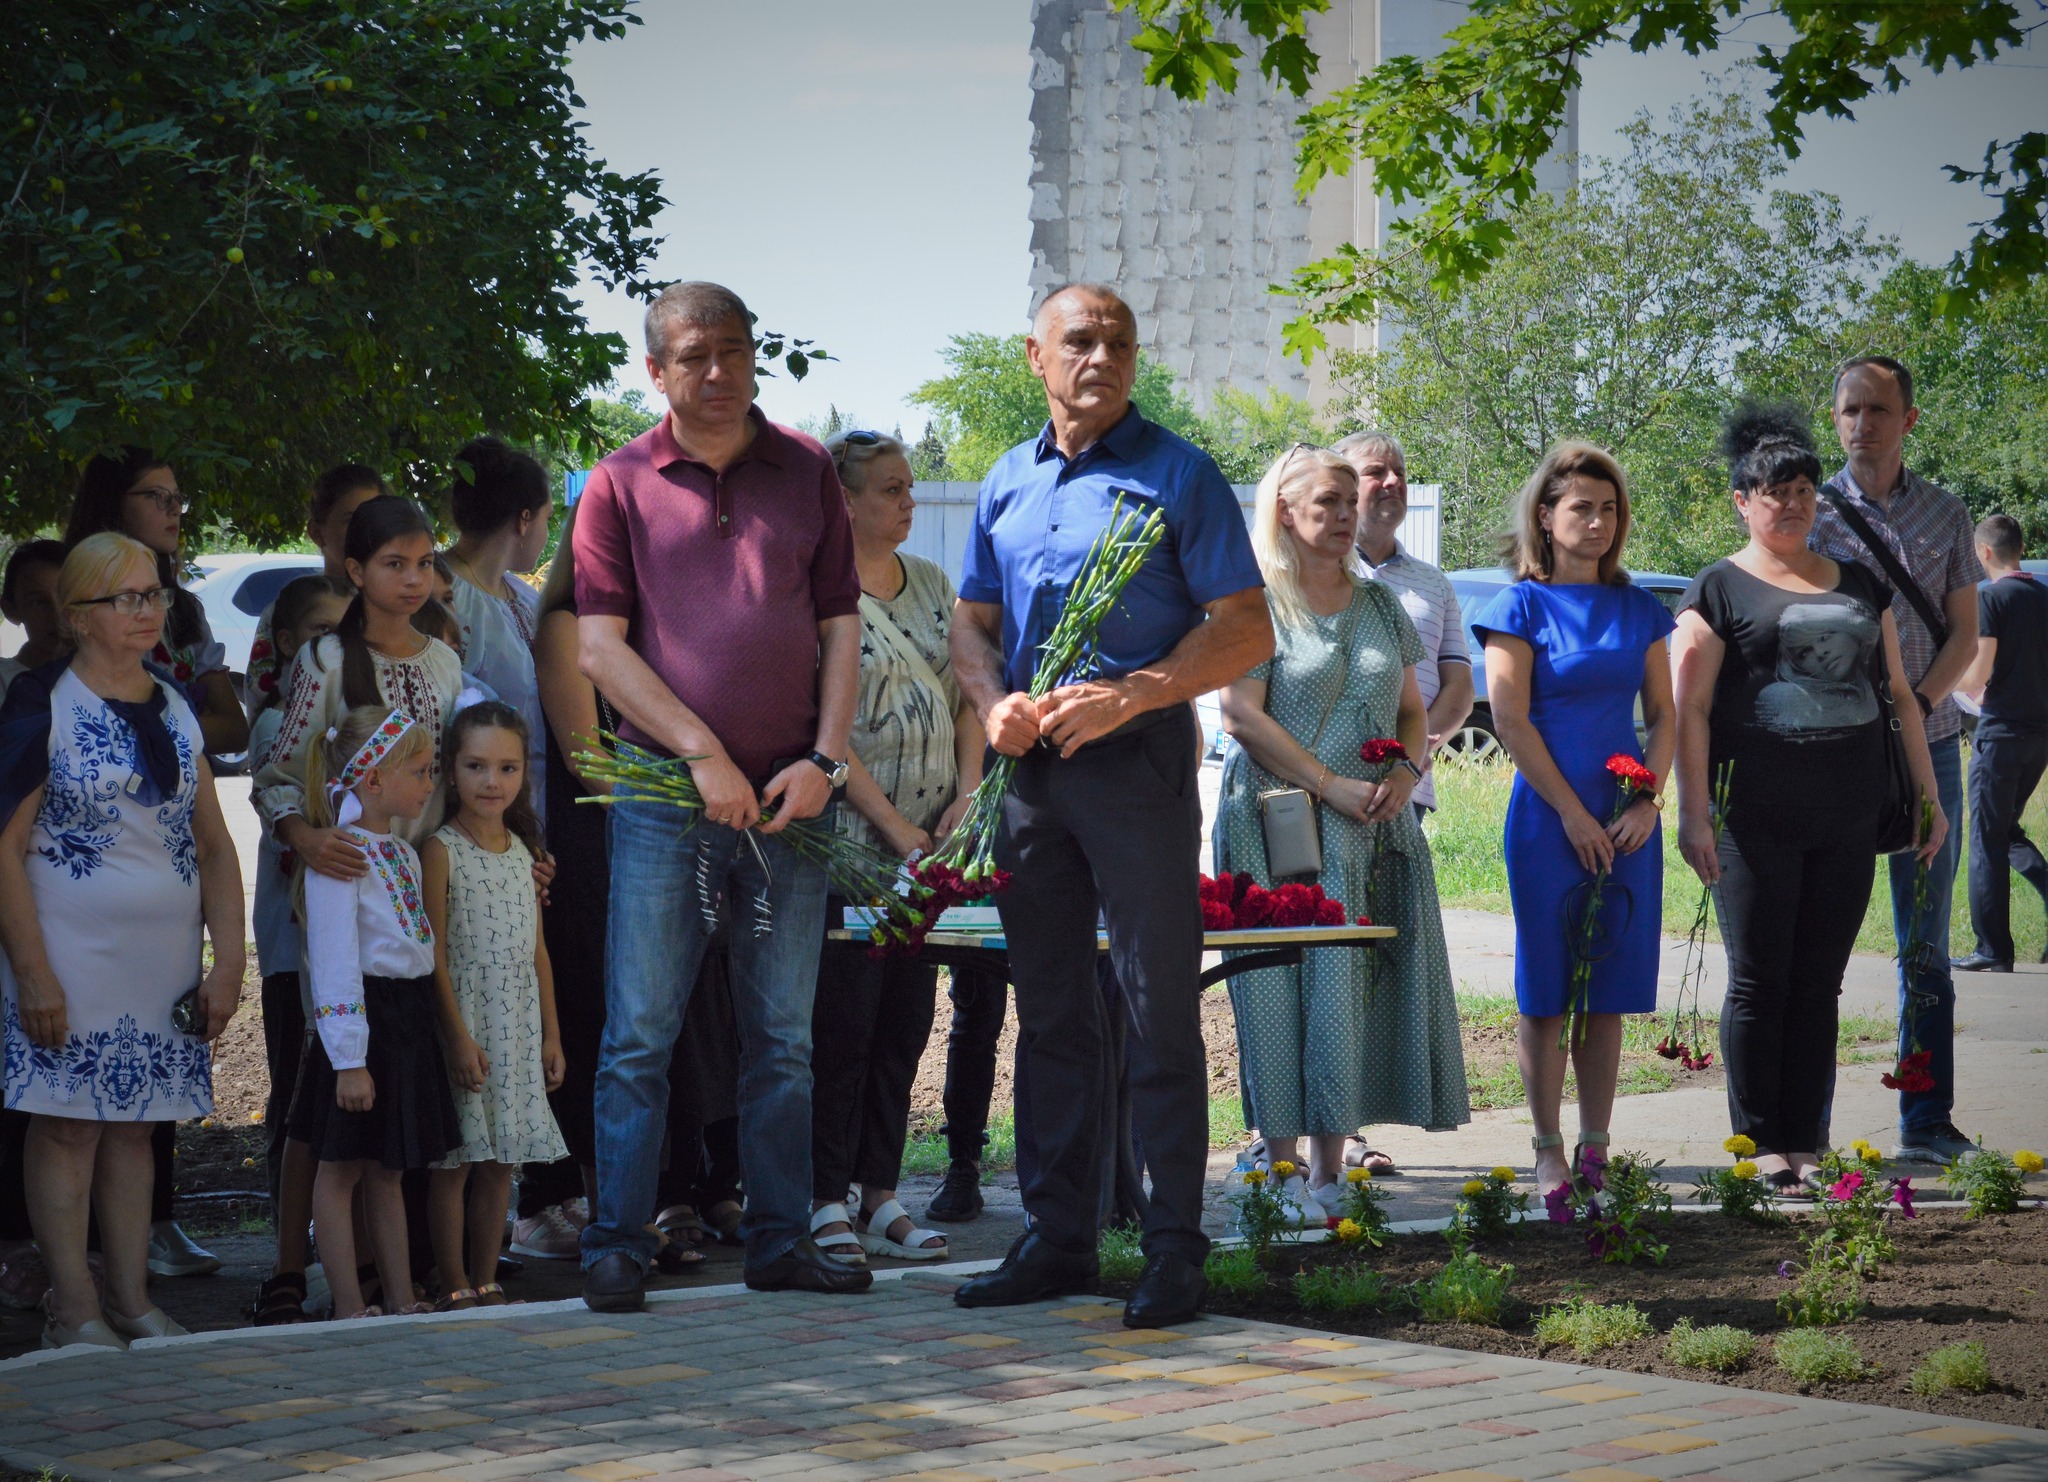 "Прошел год, но люди до сих пор не могут оправиться от той страшной ночи": в Сергеевке почтили память погибших в результате ракетного удара в июле 2022 года